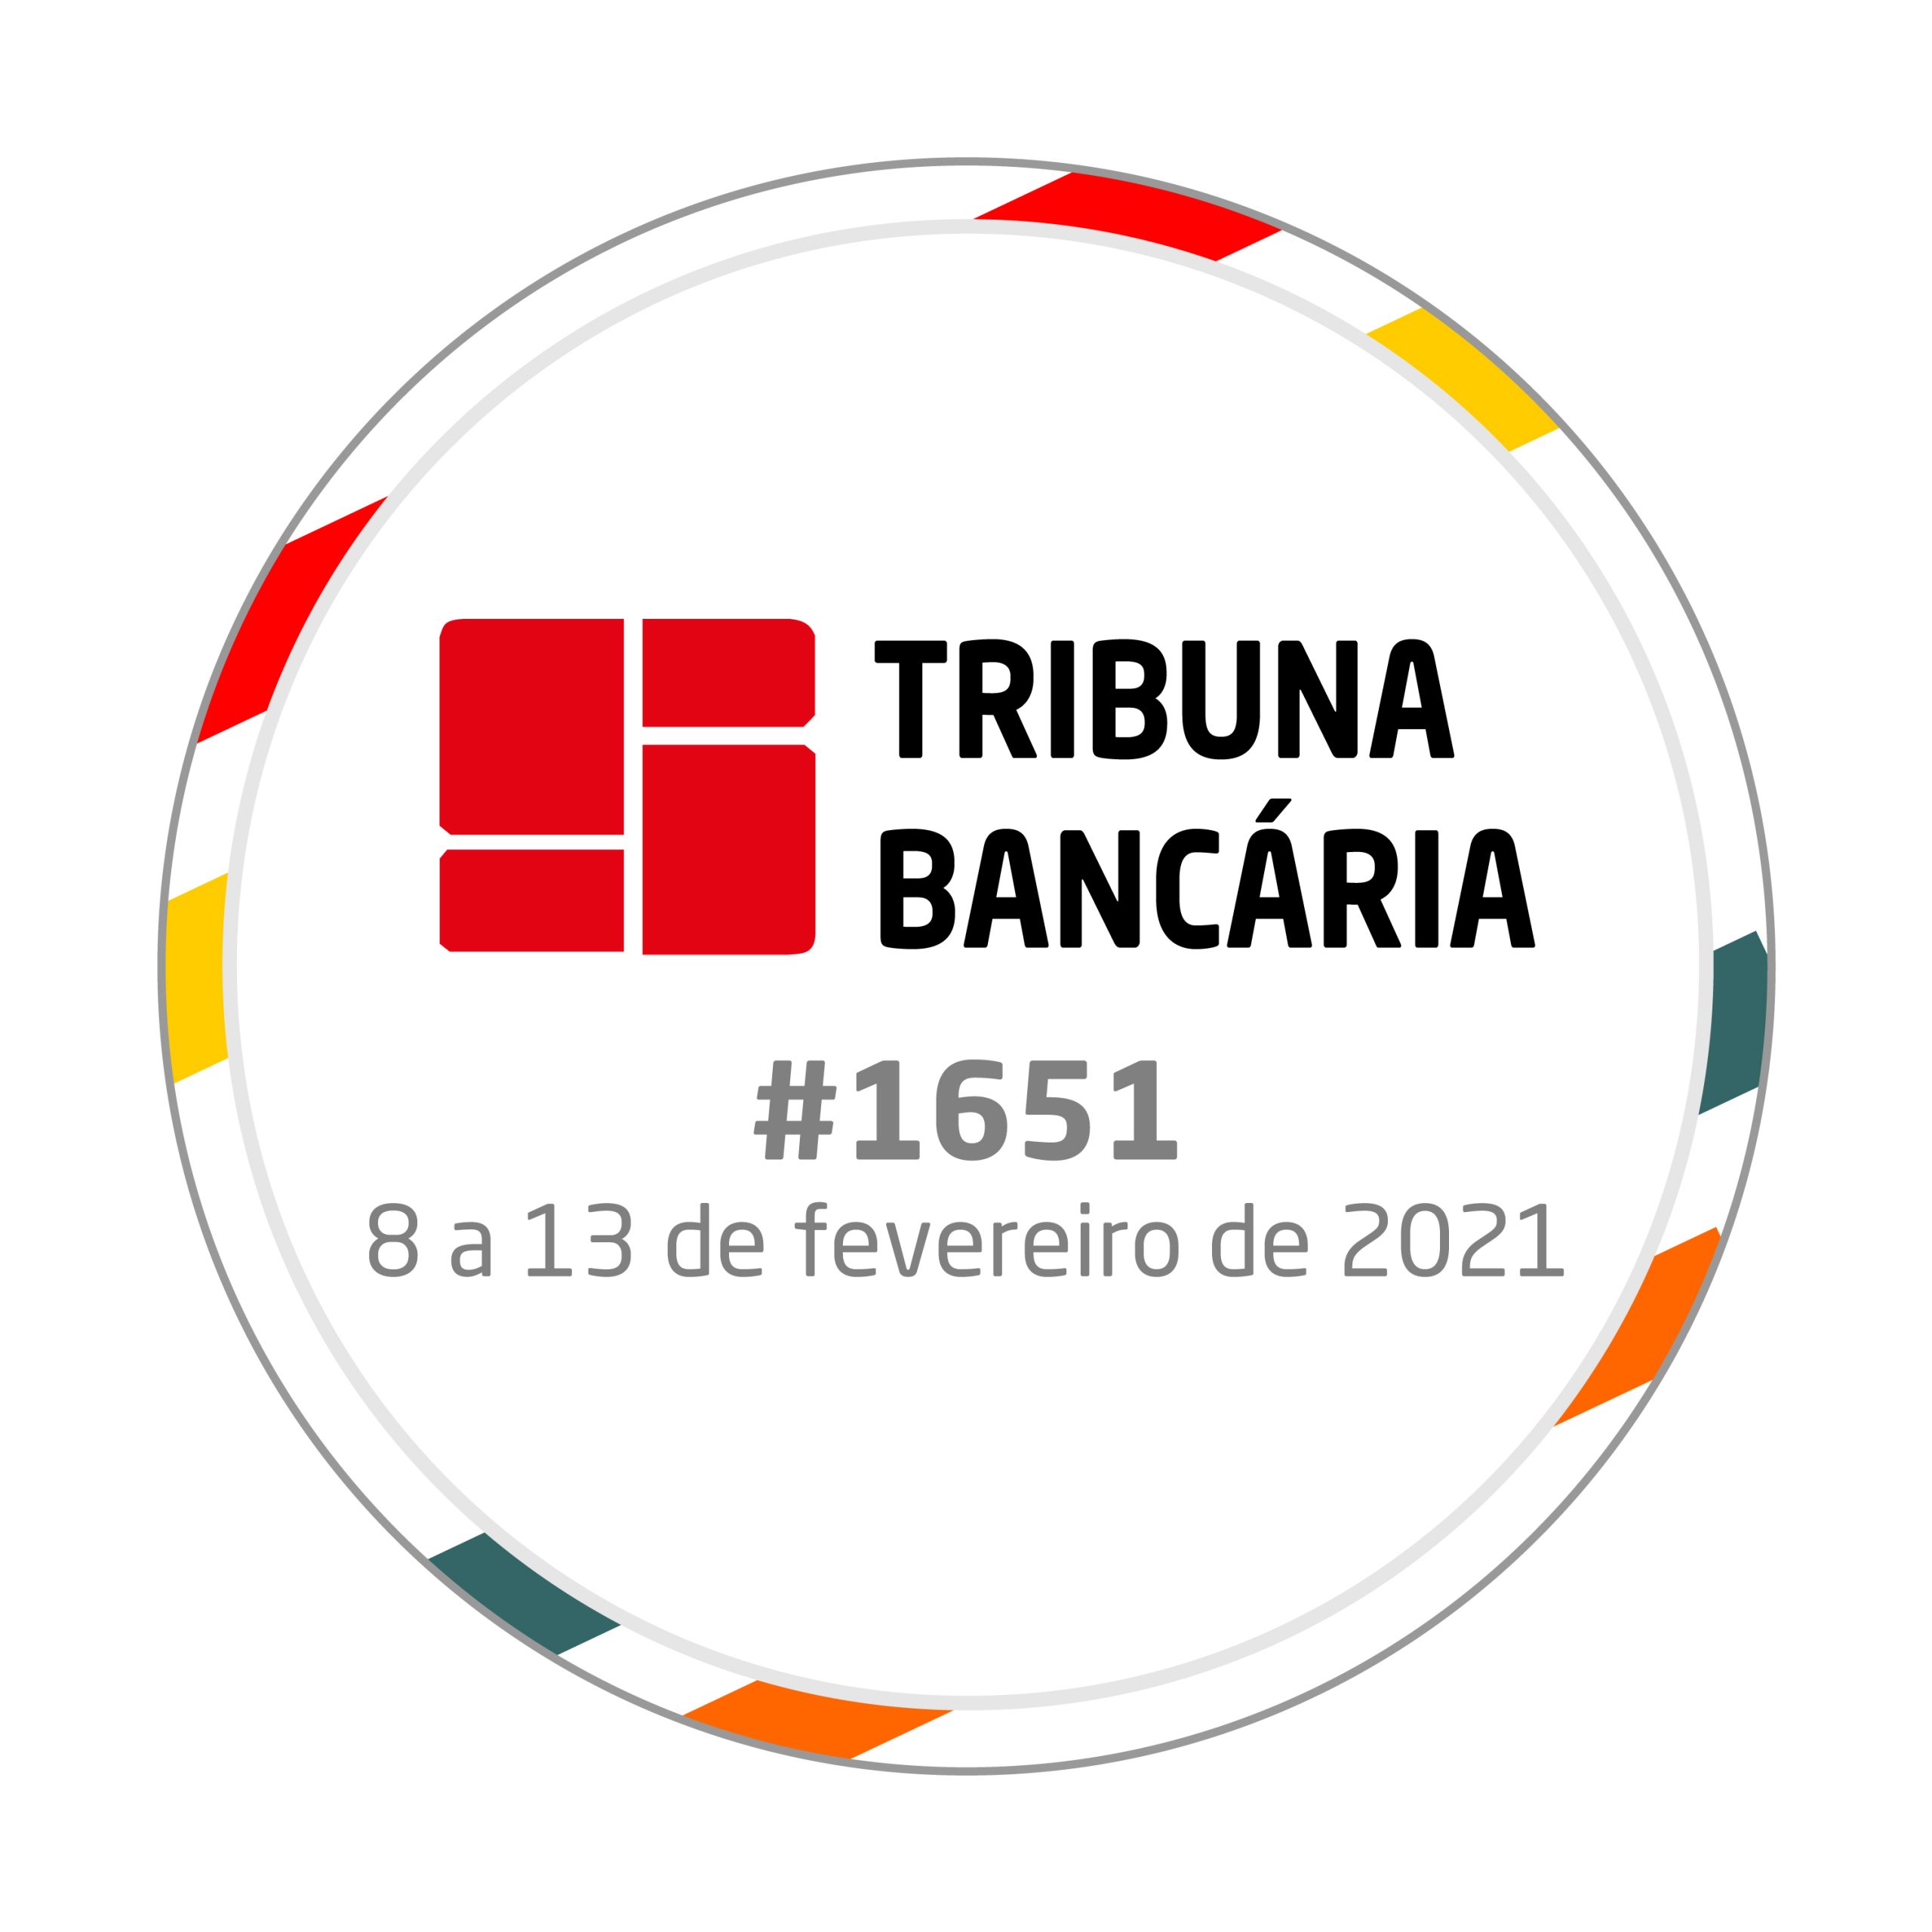 Tribuna Bancária 1651 | de 8 a 13 de fevereiro de 2021